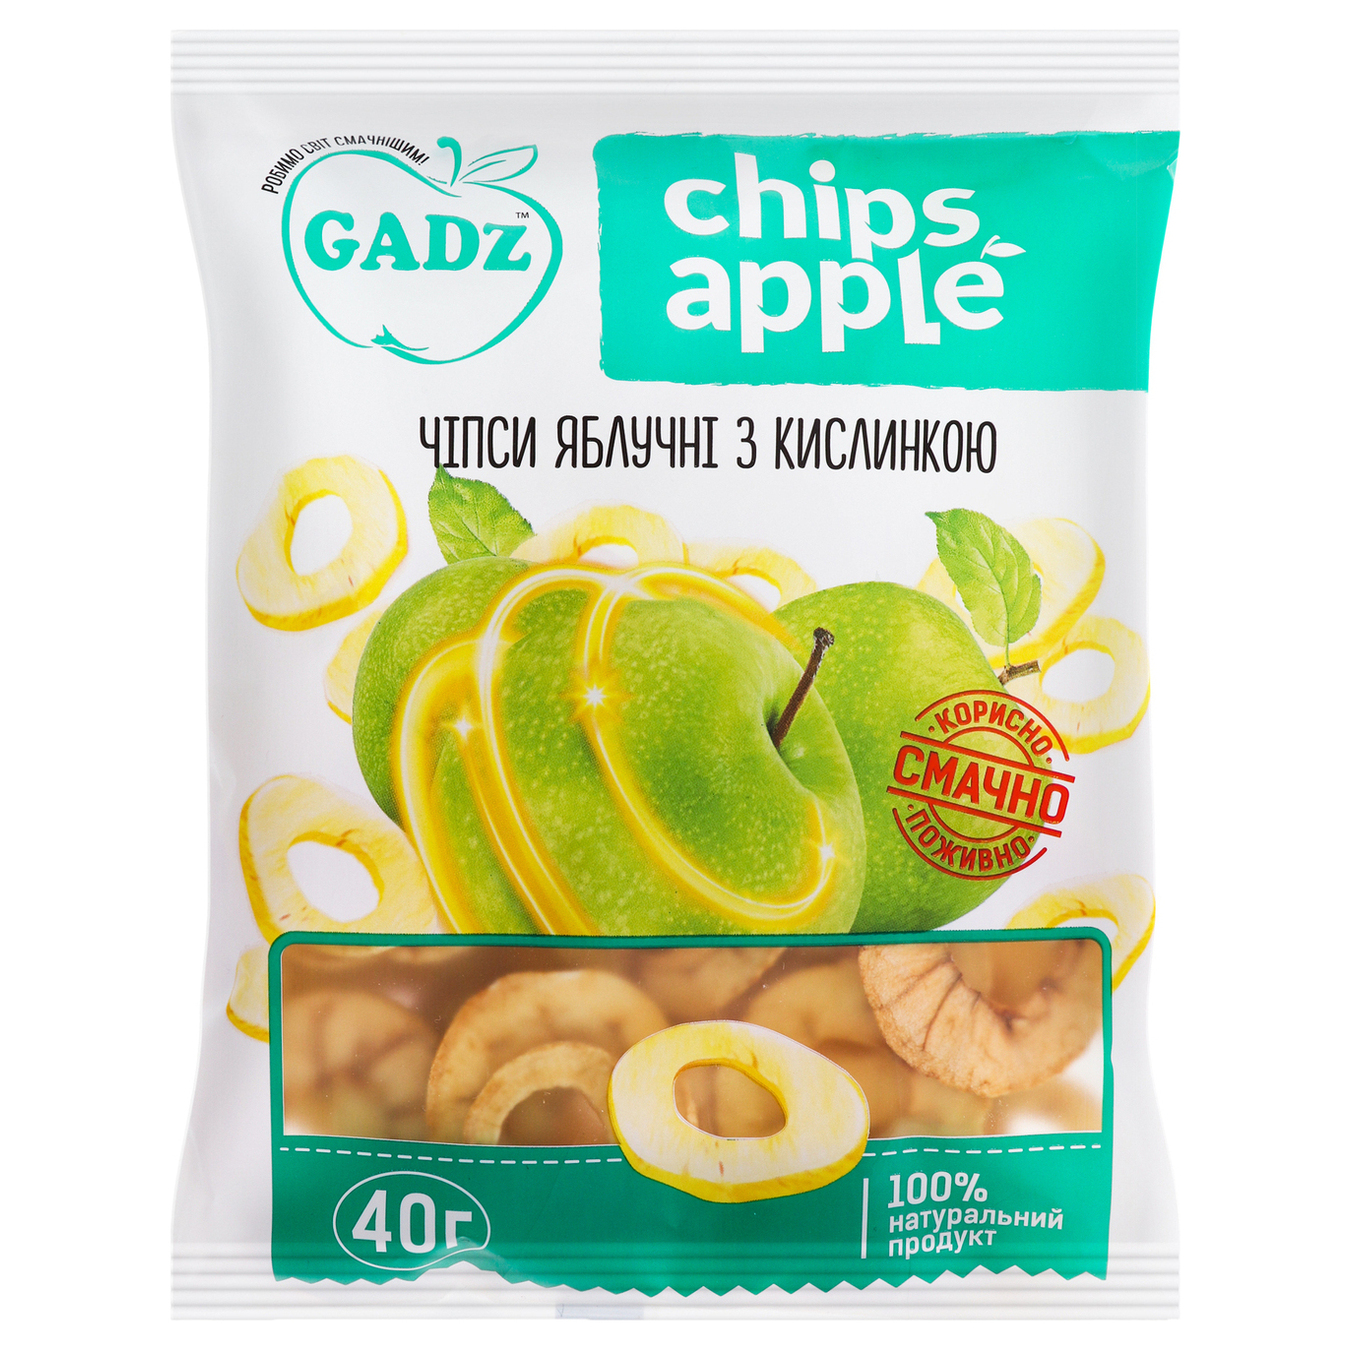 Gadz apple chips with sour cream 40g